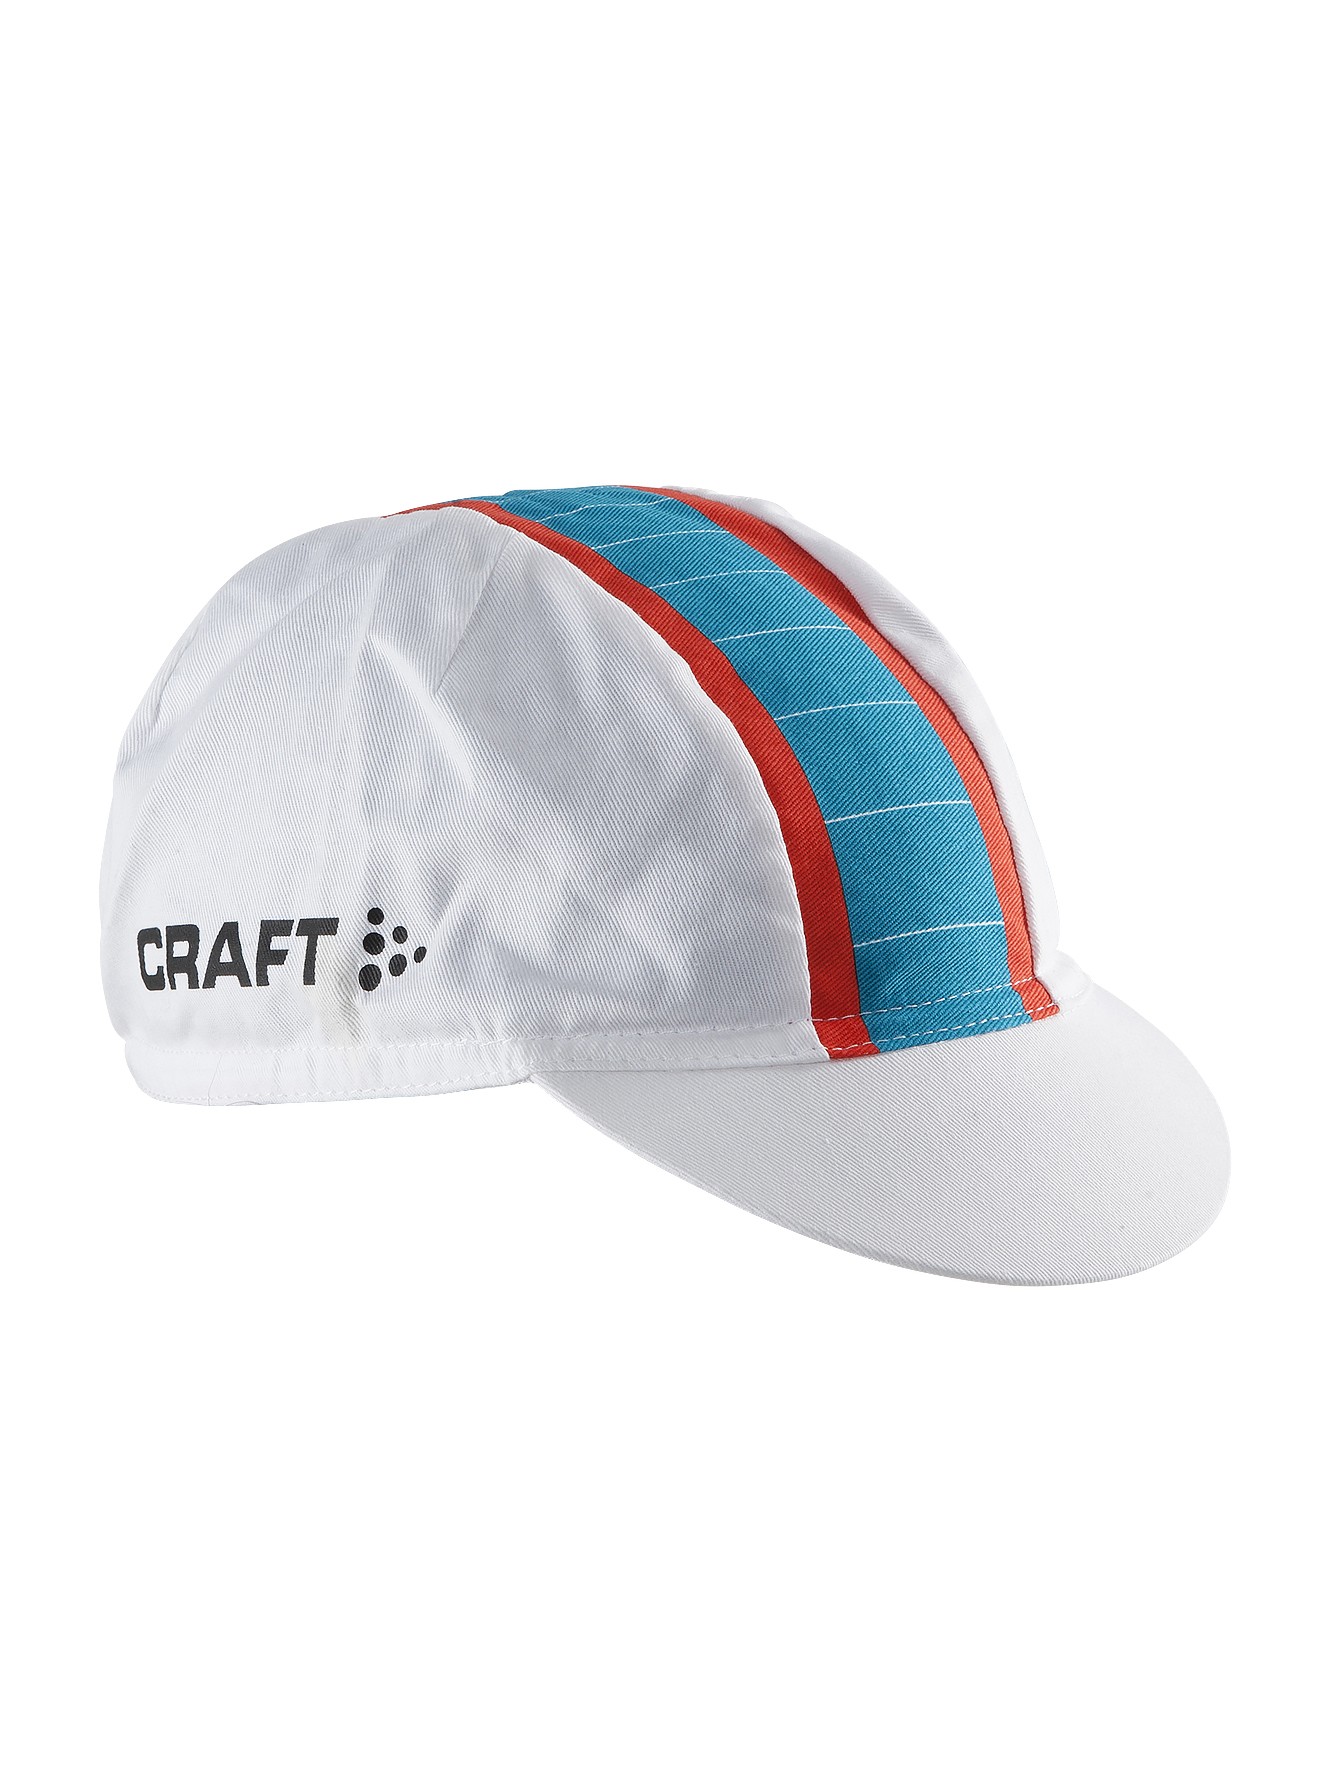 Craft Gran Fondo Cap -  CZAPKA ROWEROWA - biało-czerwono-niebieska SS16